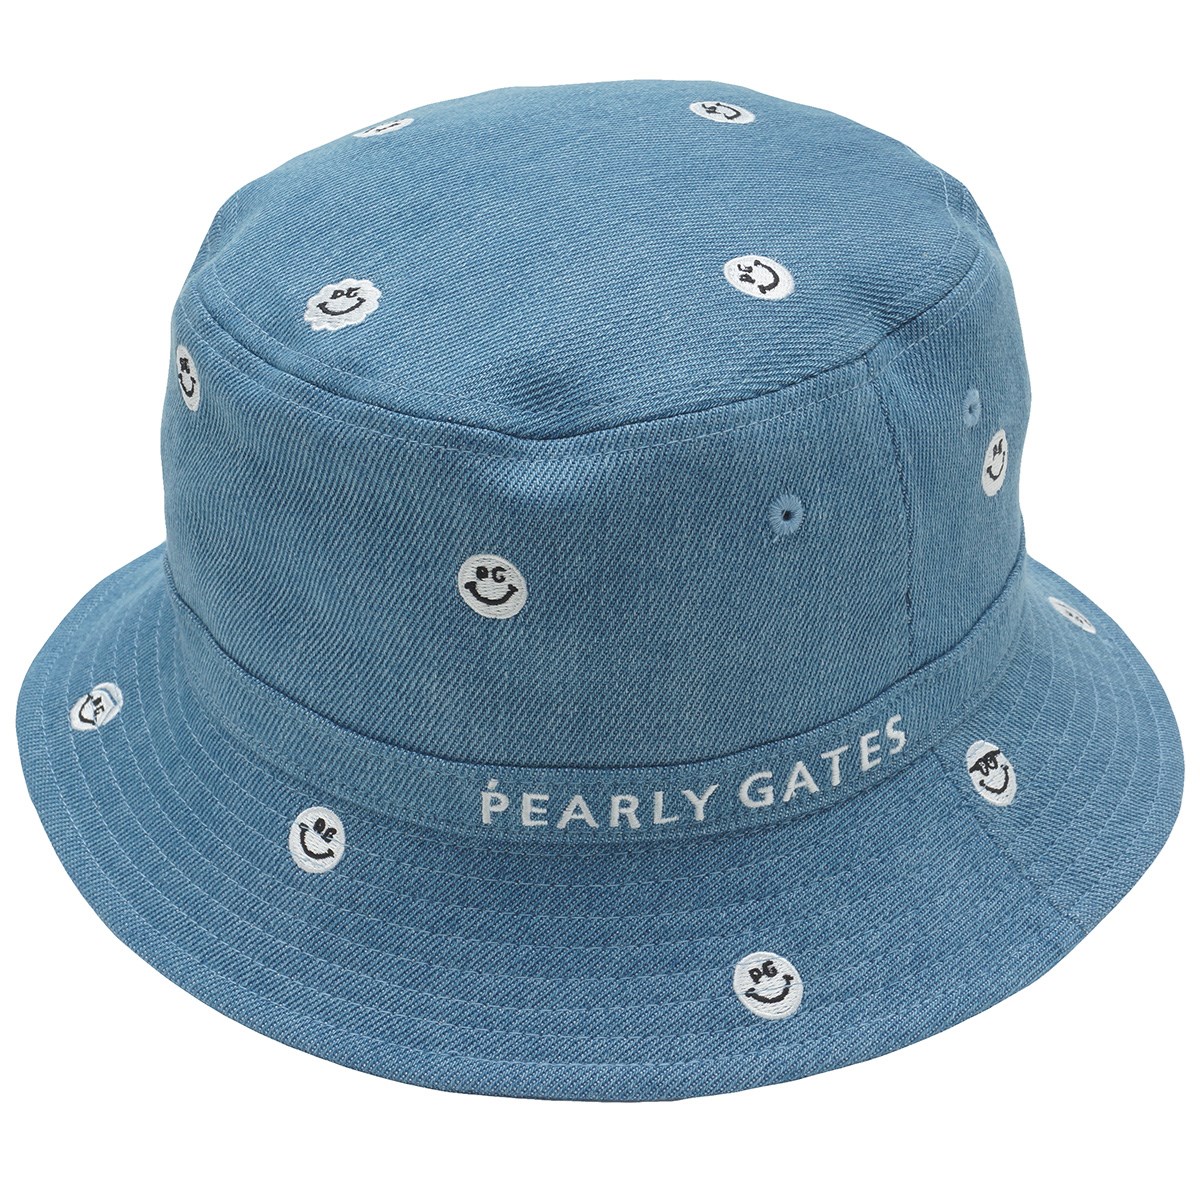 送料無料クザクラ PEARLY GATES ハット 帽子 ファーロ公式正規品-ファッション,メンズファッション -  www.writeawriting.com